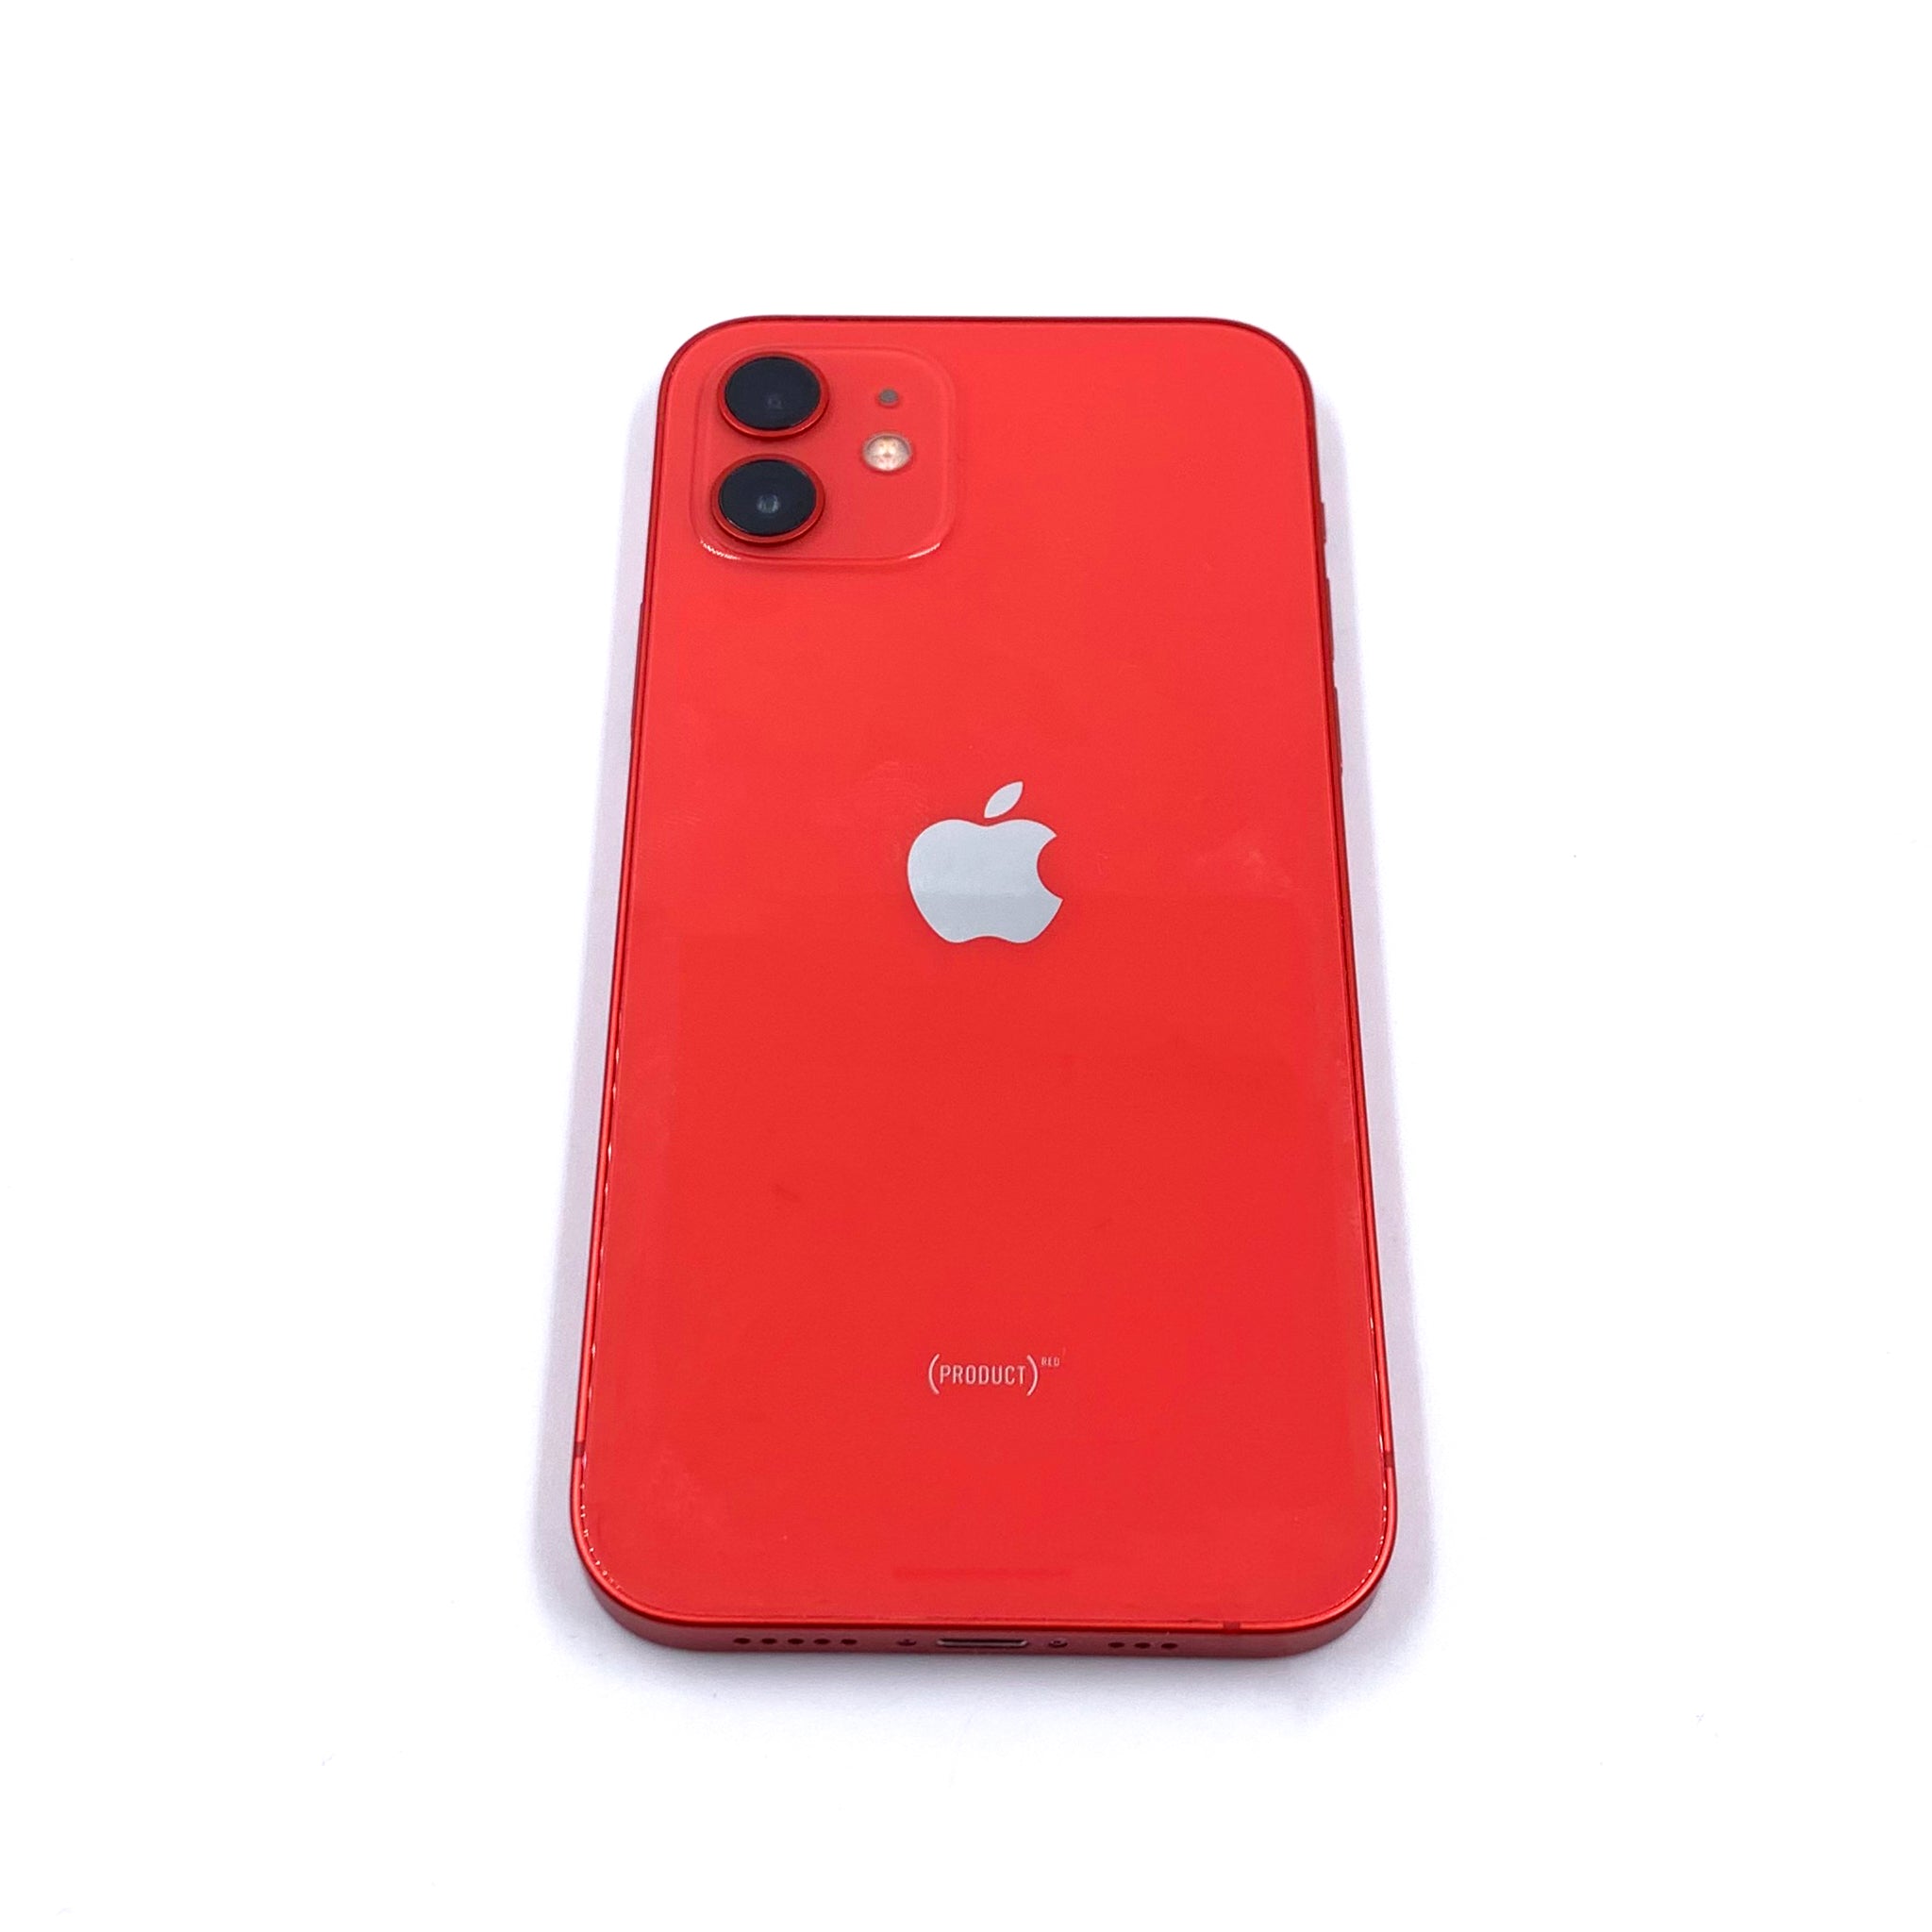 Apple iPhone 12 Pro A234 (Reacondicionado) – Tienda Dondé